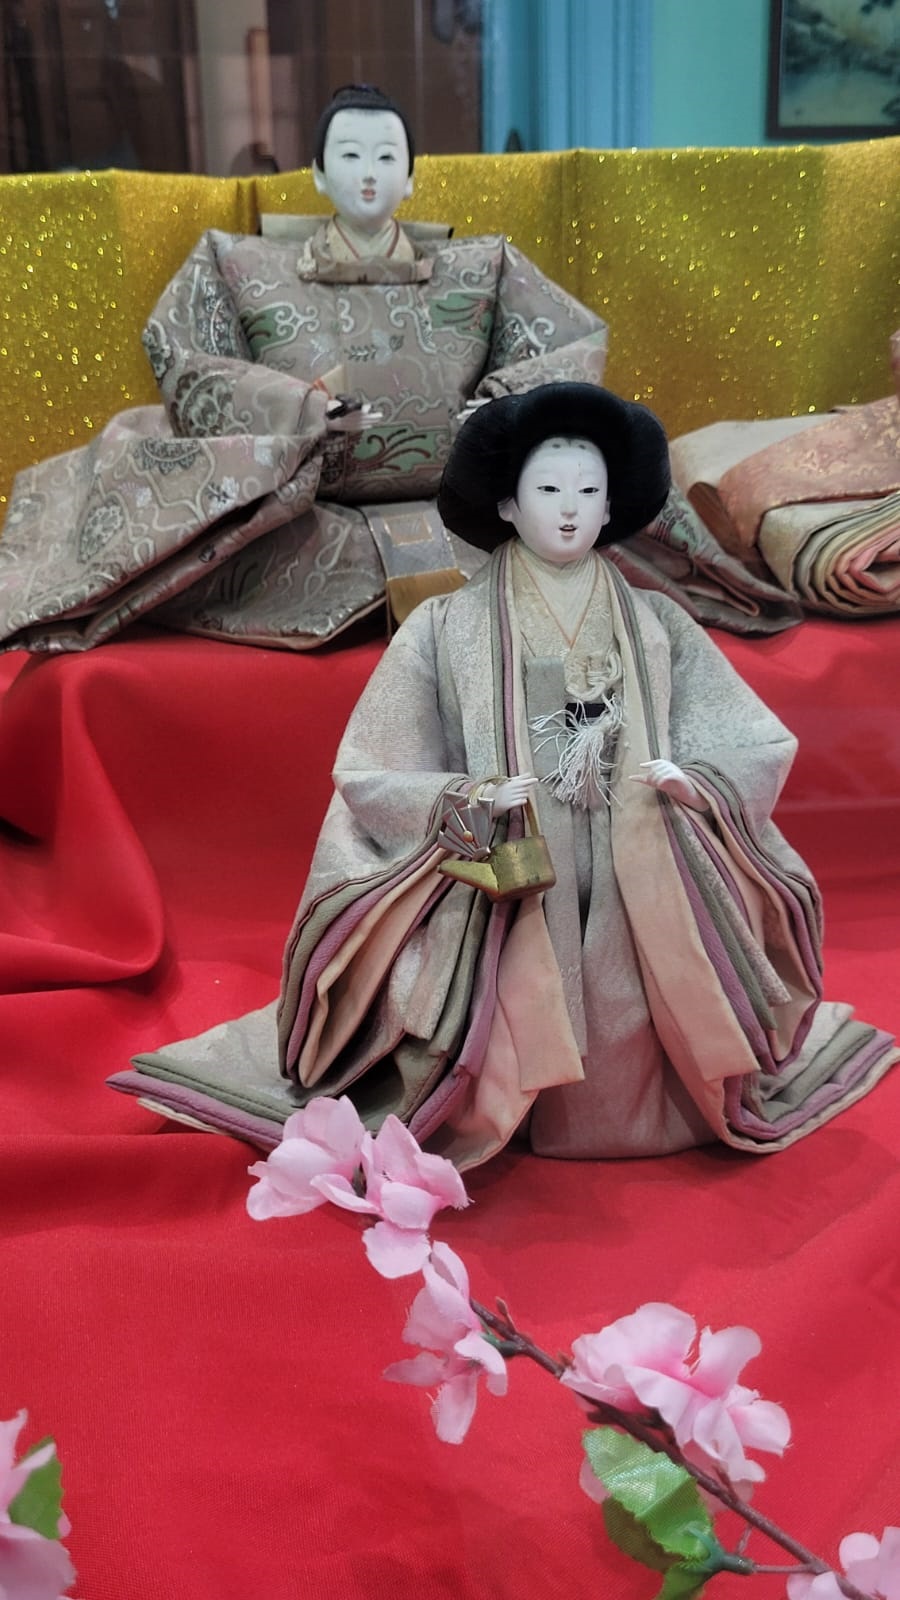 CONTEXTO. La muestra se hace  en el marco del festival de muñecas japonesas, dedicado a la salud y a la felicidad de las niñas, y a la feminidad.